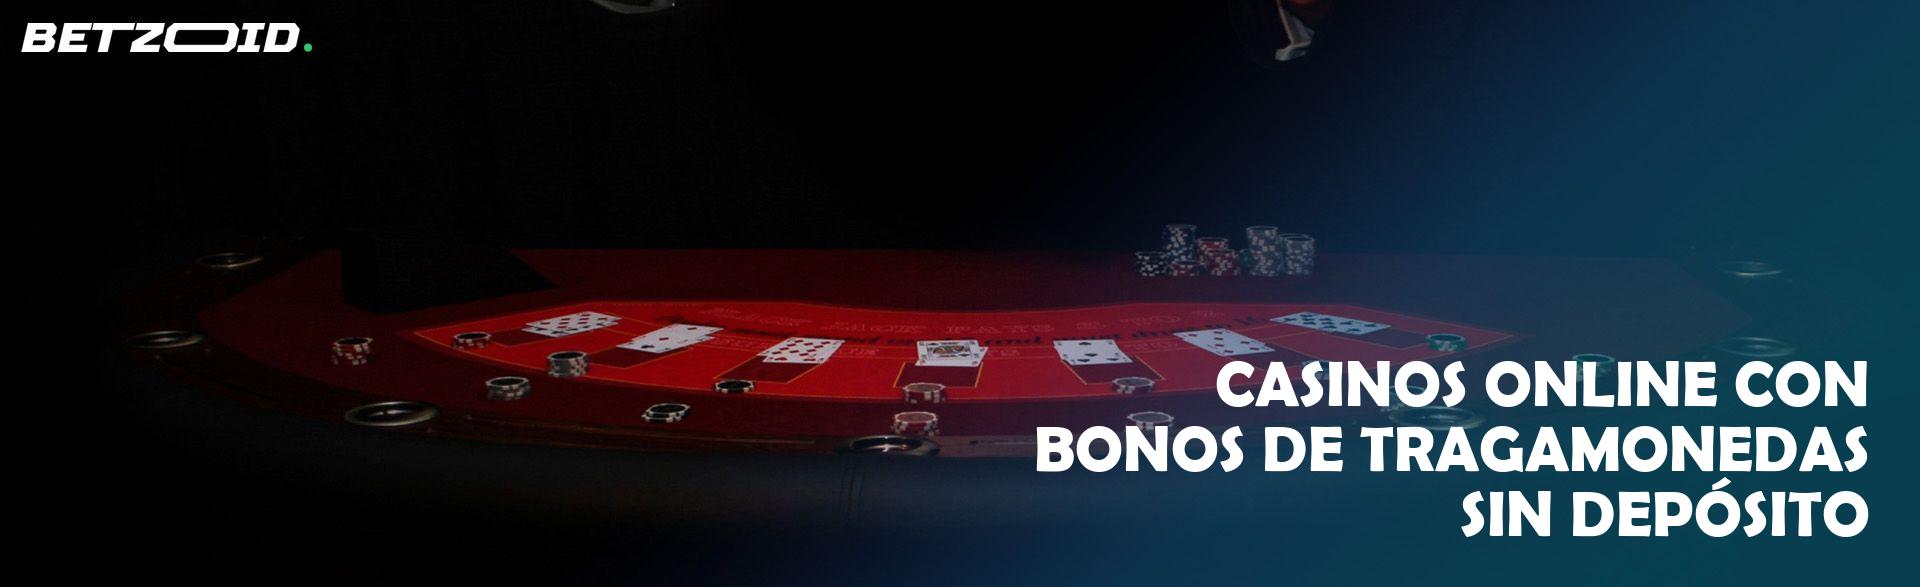 Casinos Online con Bonos de Tragamonedas sin Depósito.